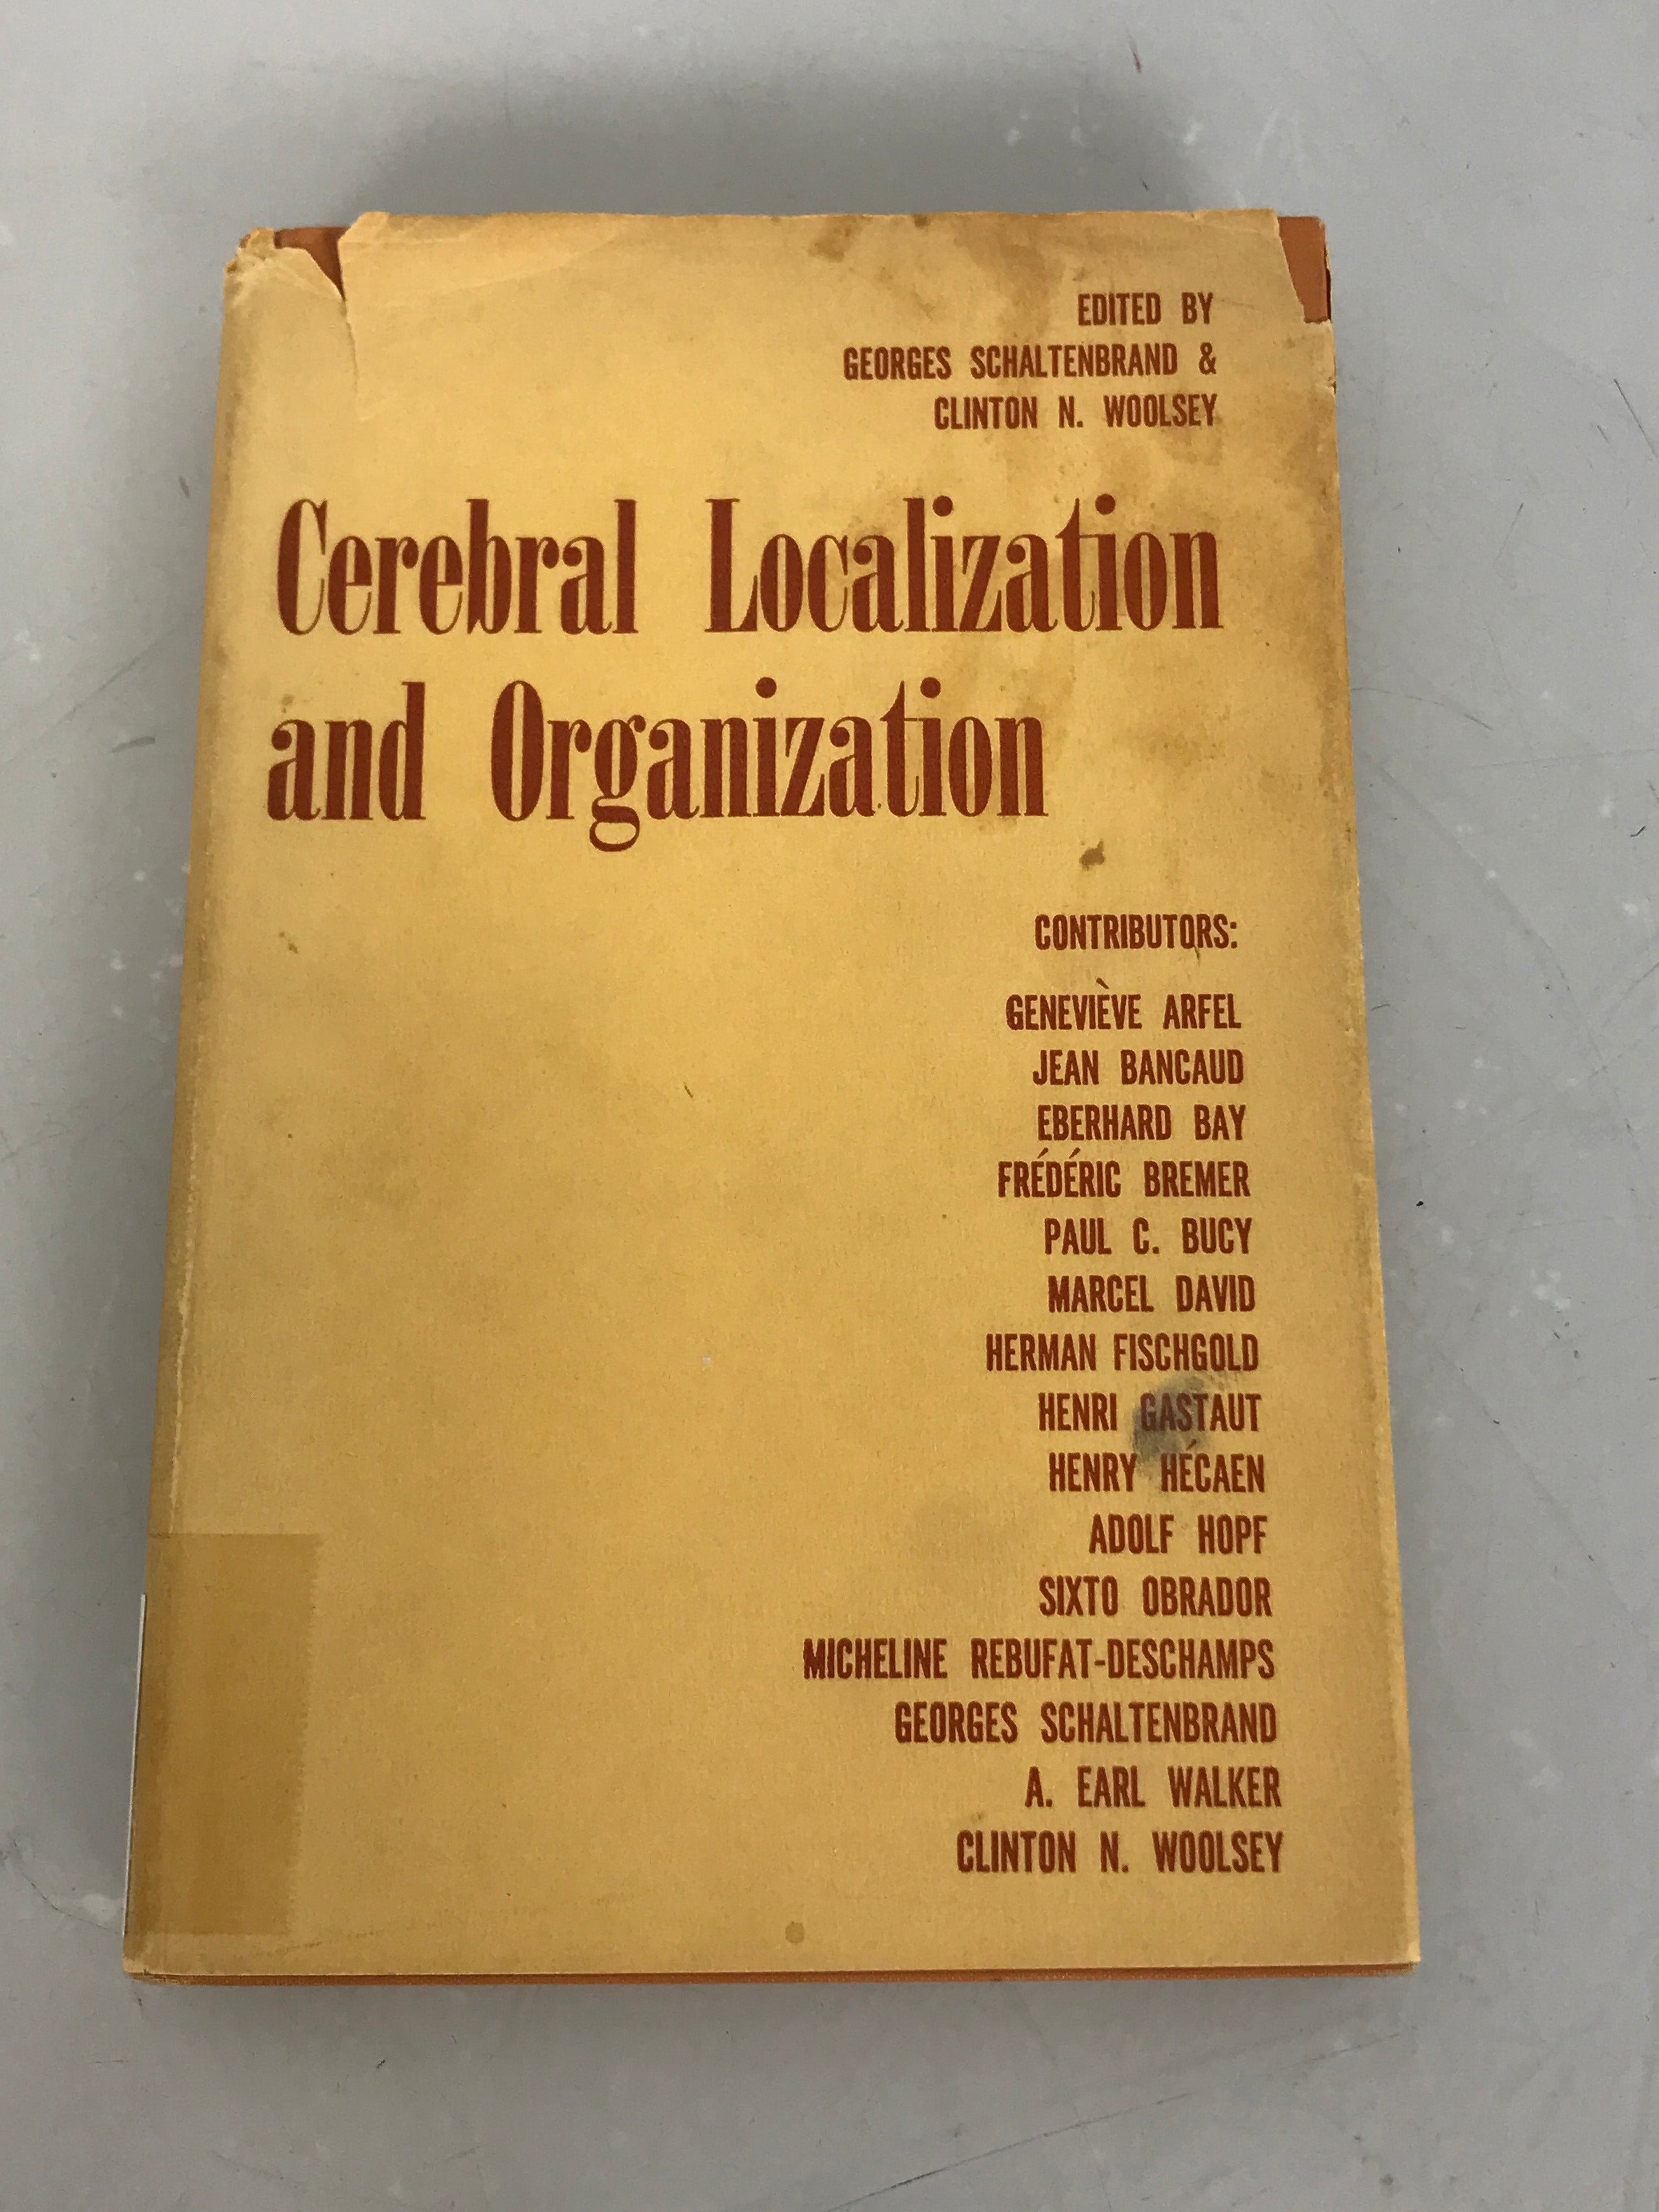 Cerebral Localization and Organization by Schaltenbrand & Woolsey 1964 HC DJ